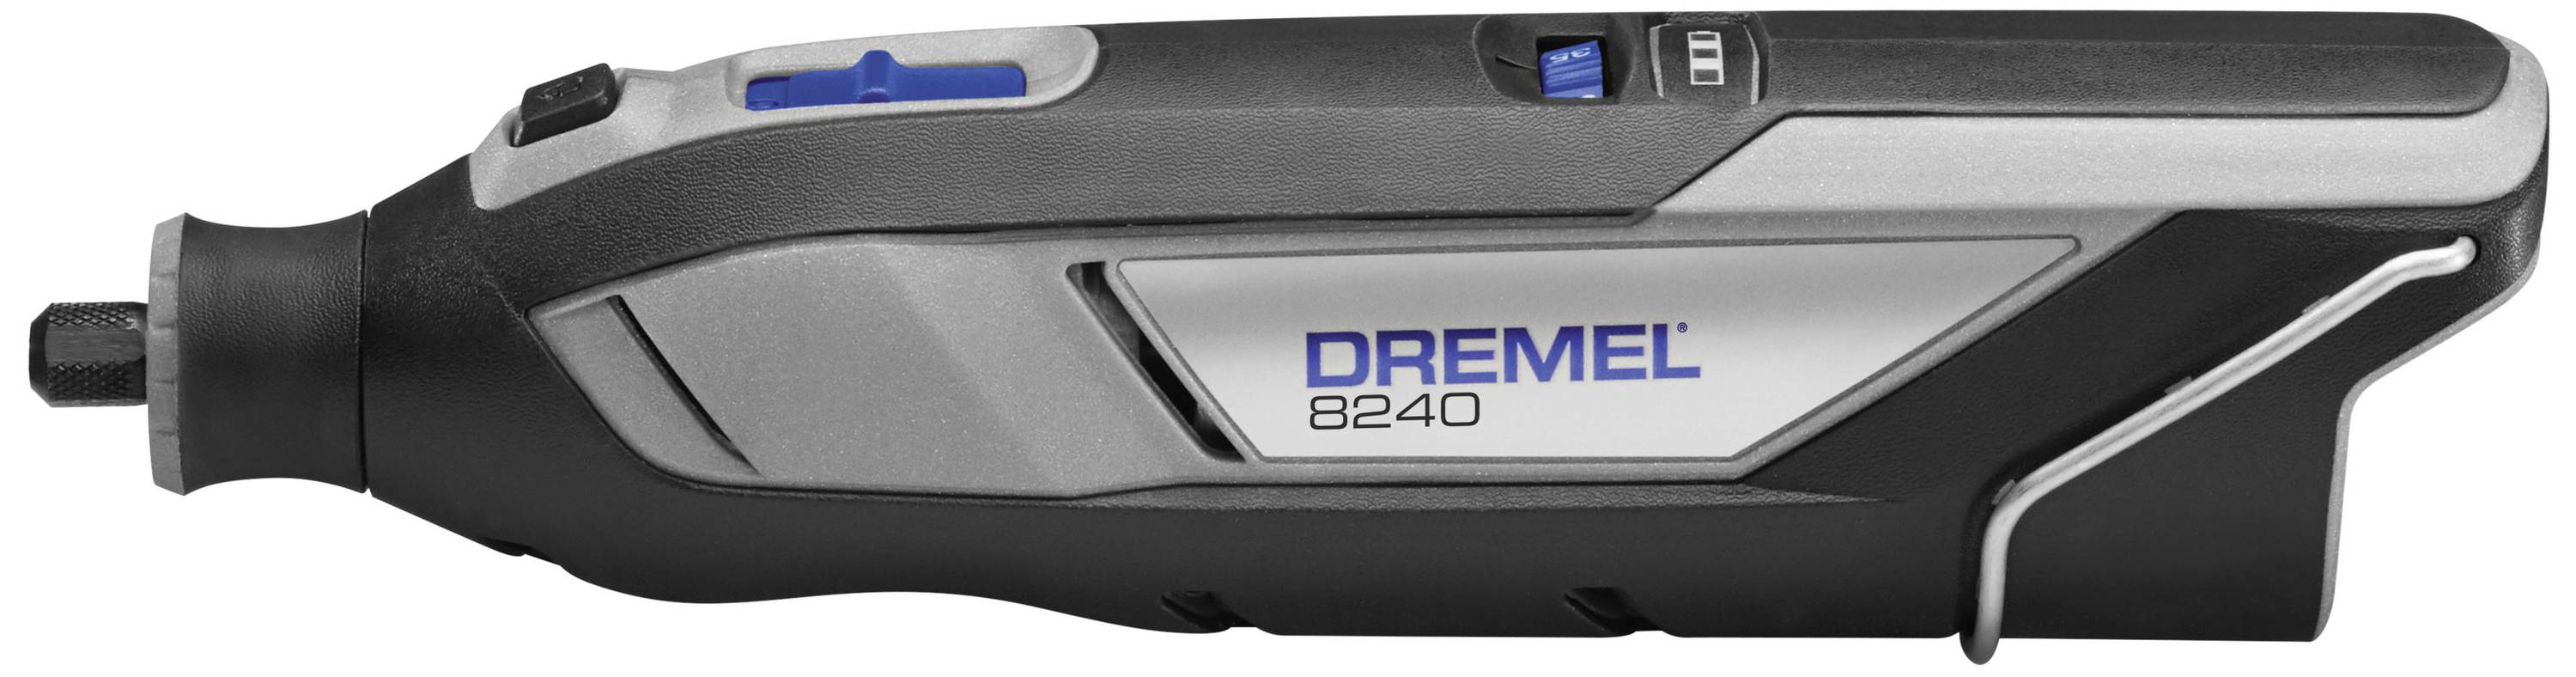 Buy Dremel 8240-5 F0138240JA Cordless multifunction tool incl